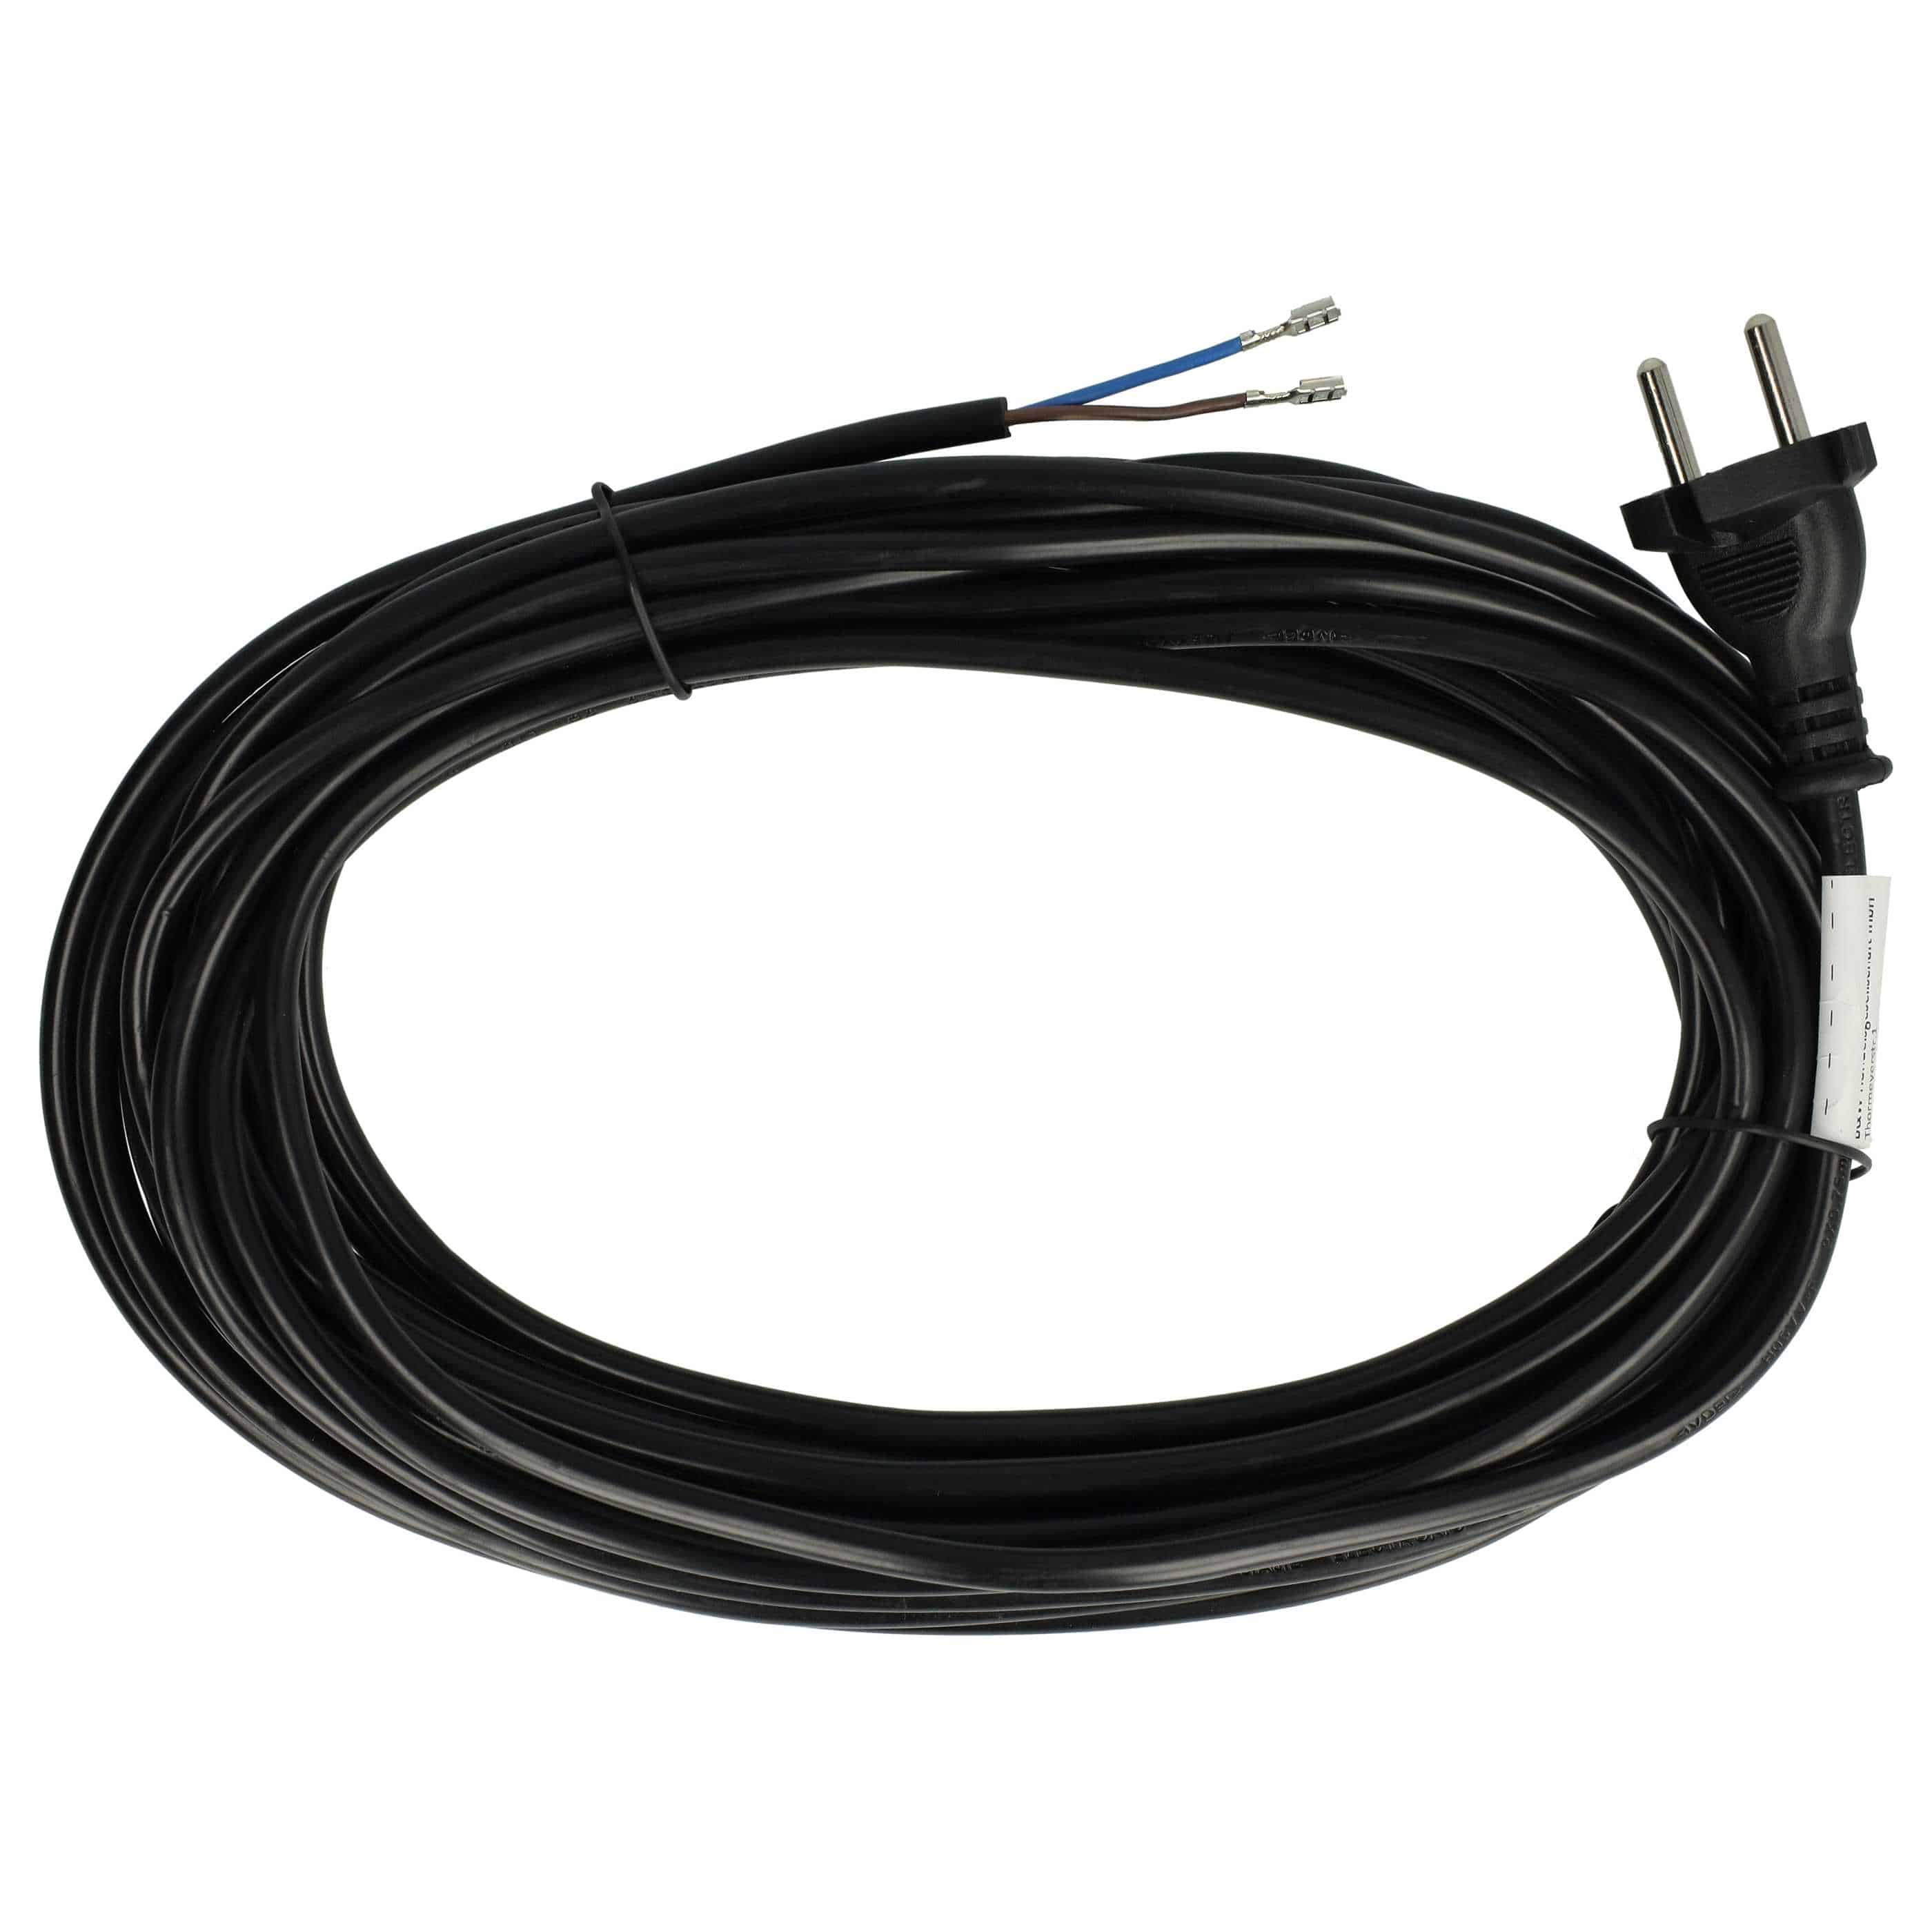 Câble électrique remplace Sebo 7128SR, 5260DG pour aspirateurs Thomas - Câble 10 m, 1000 W